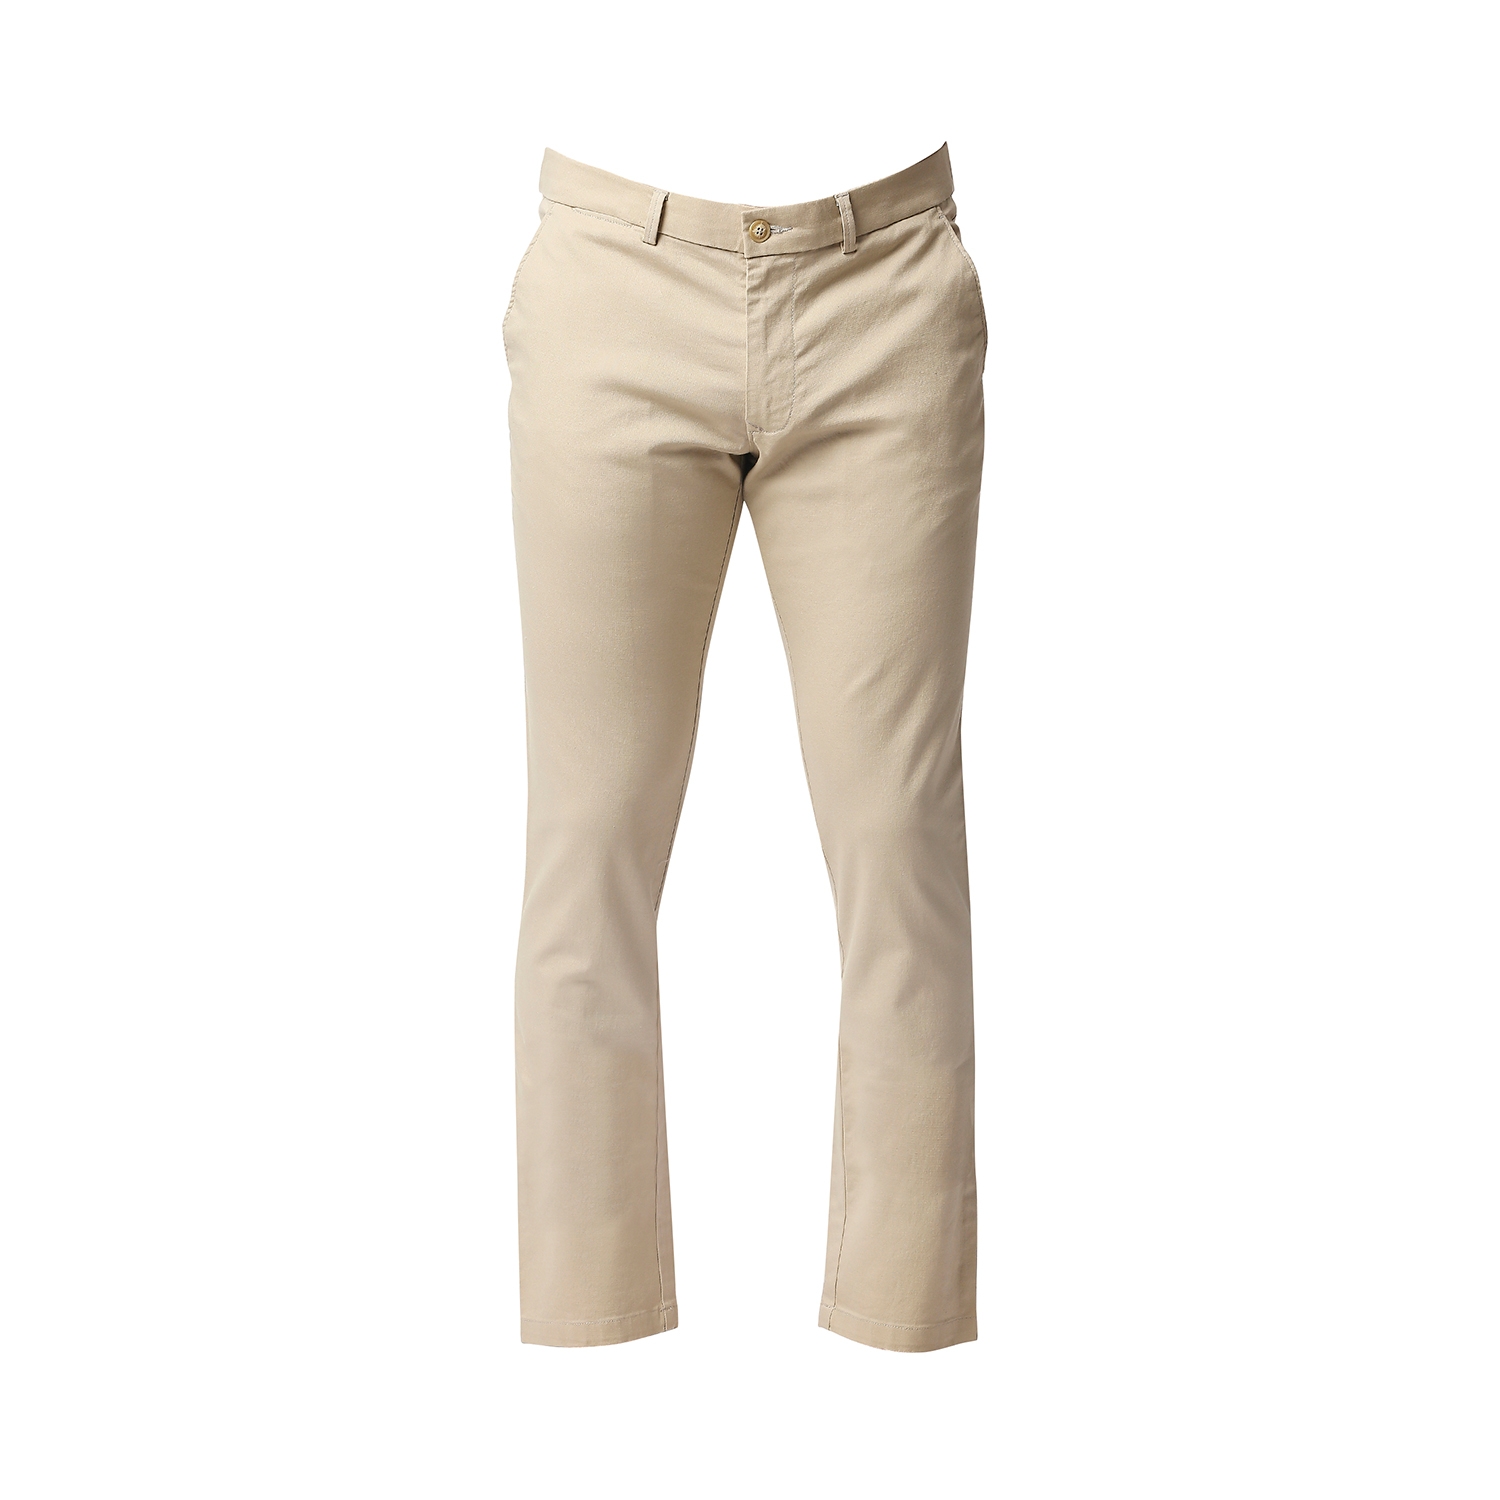 Men's Khaki Cotton Blend Solid Trouser